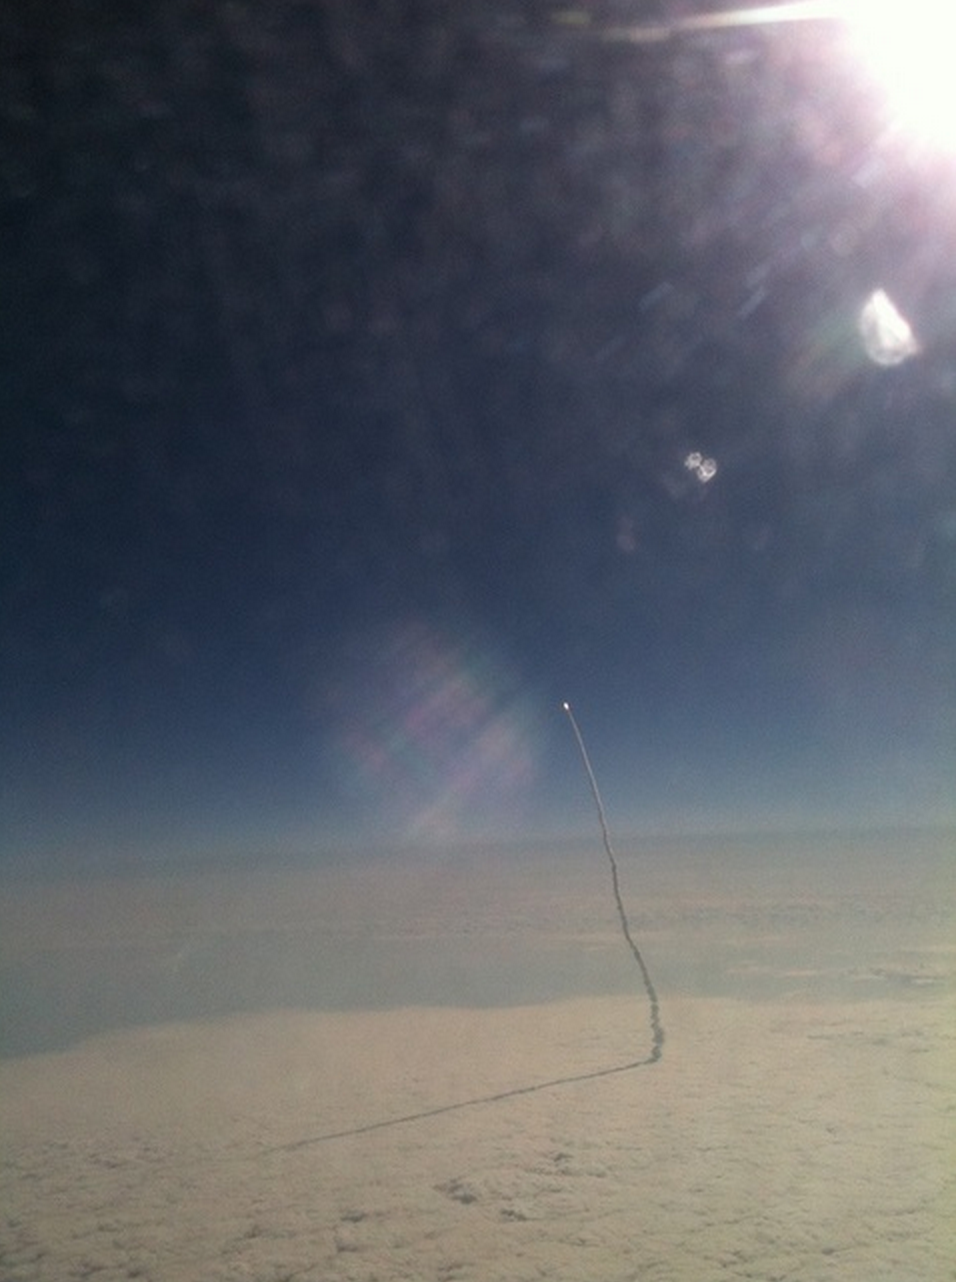 4. 一位飛機乘客Stefanie Gordon用iPhone拍下了 奮進號太空梭(Endeavour )正在飛向宇宙的瞬間。